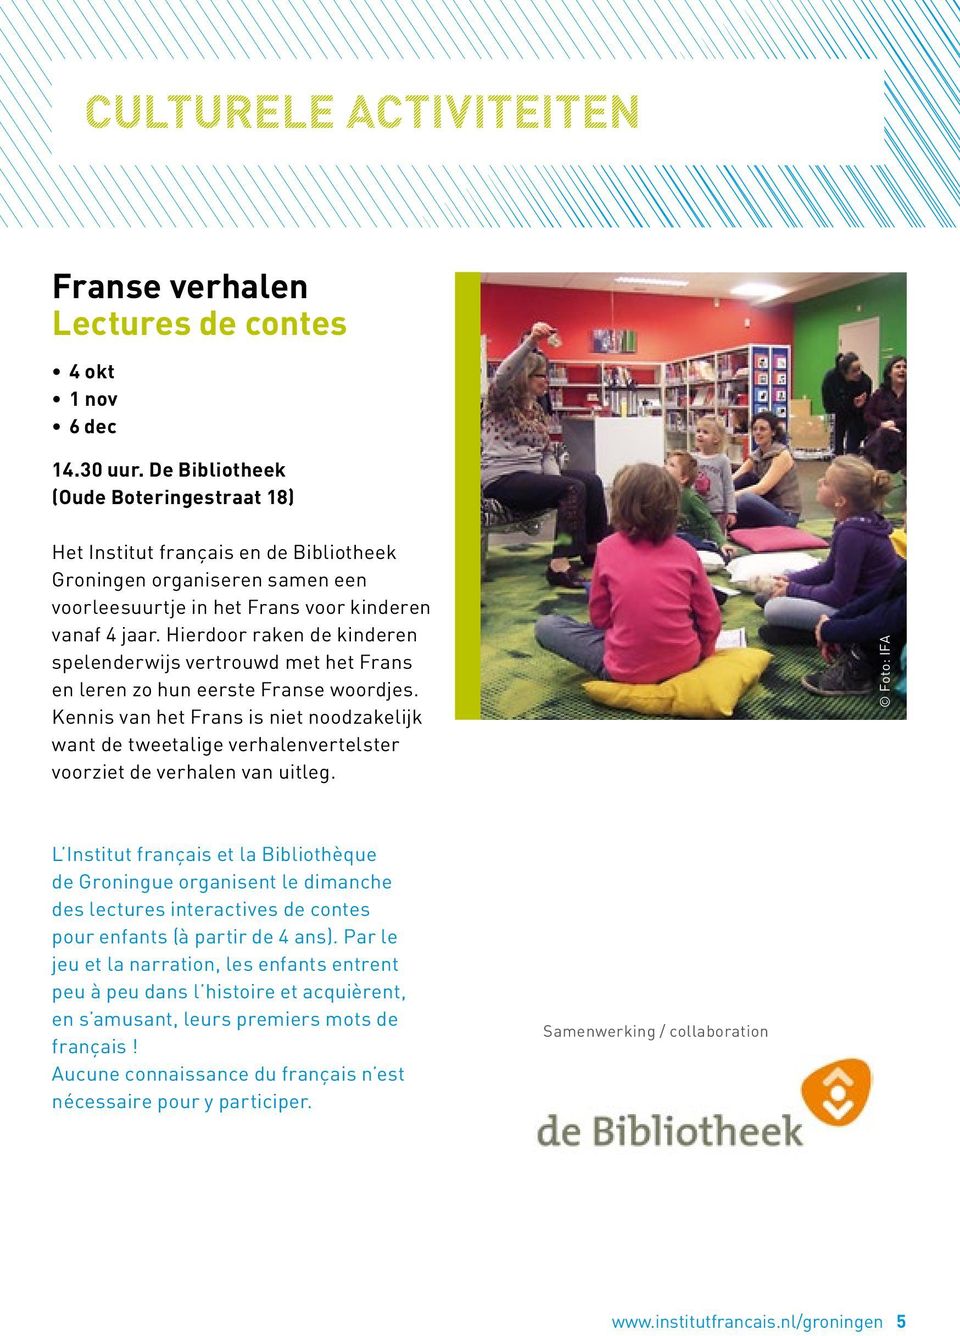 Hierdoor raken de kinderen spelenderwijs vertrouwd met het Frans en leren zo hun eerste Franse woordjes.